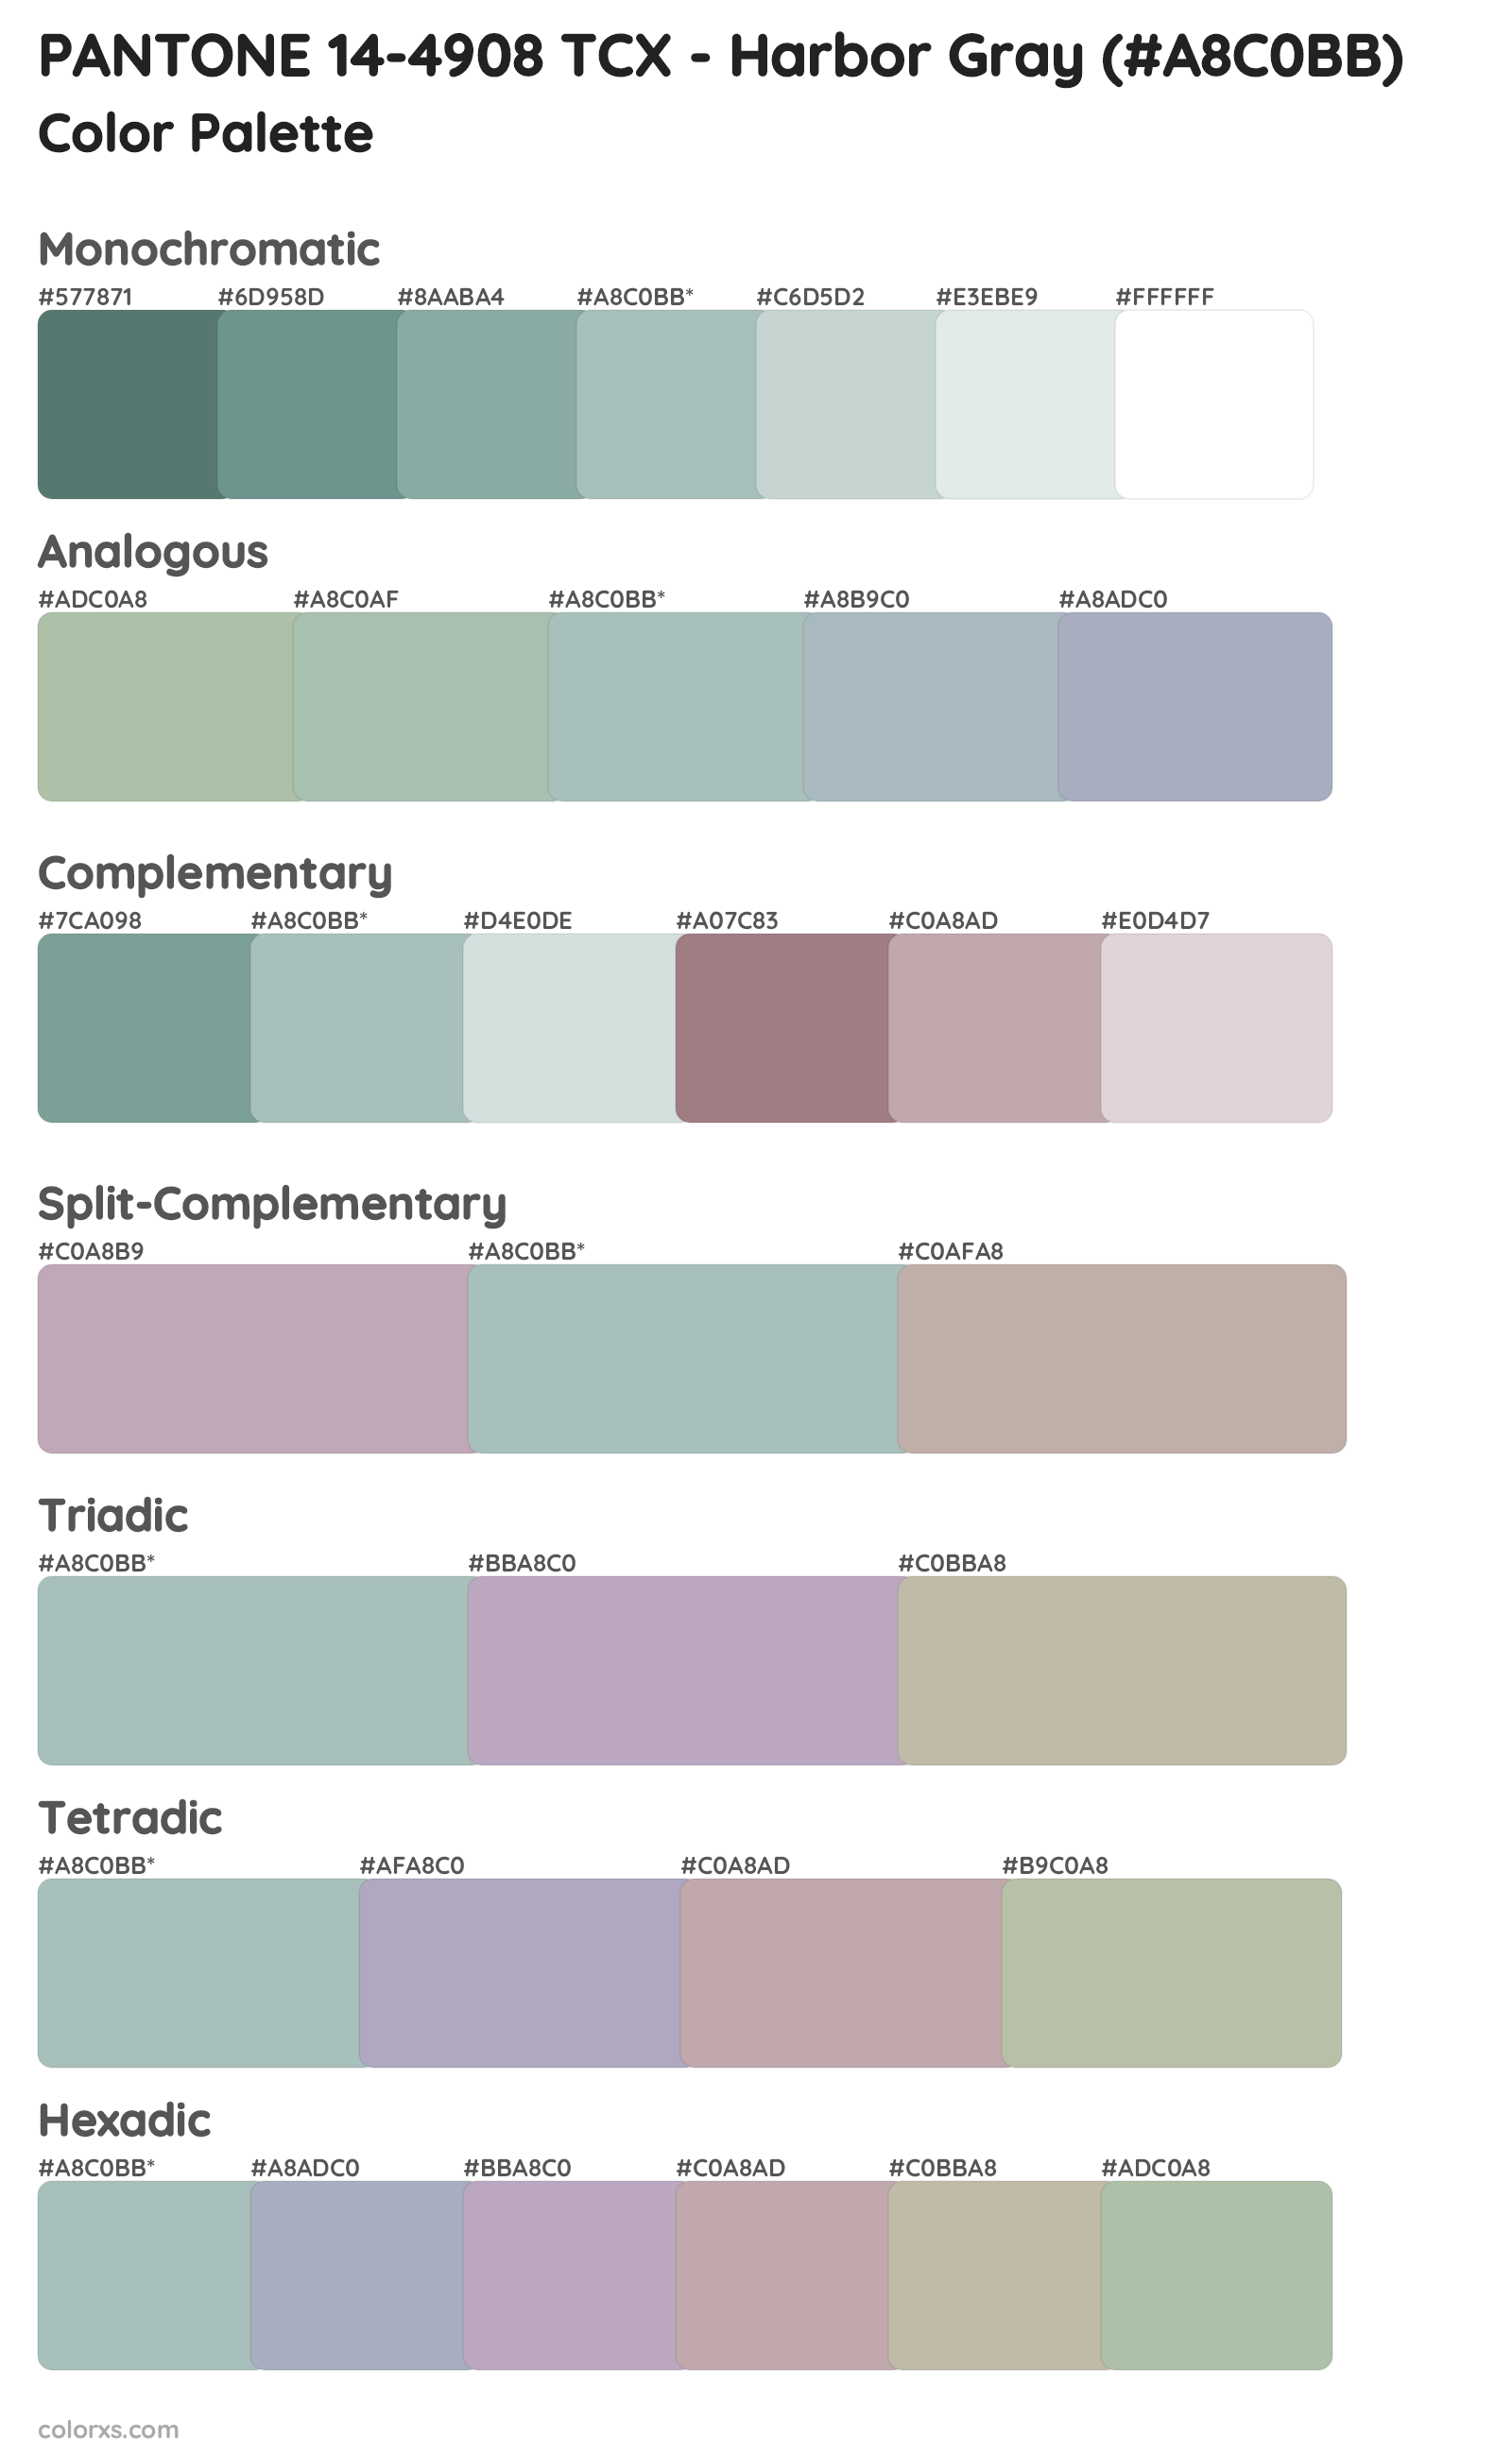 PANTONE 14-4908 TCX - Harbor Gray Color Scheme Palettes